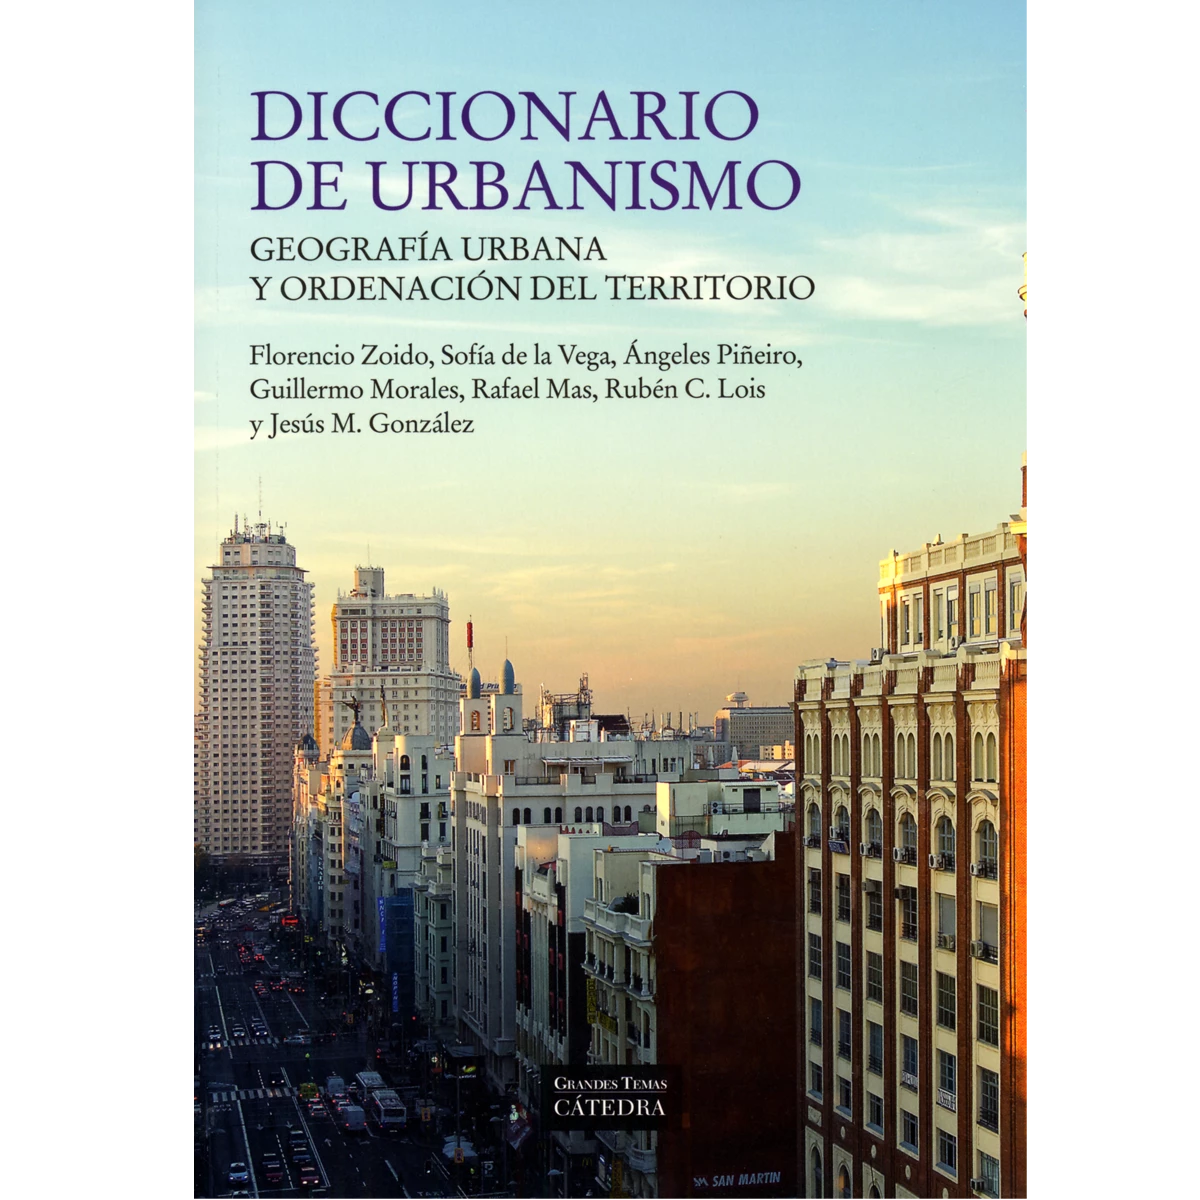 Diccionario de urbanismo